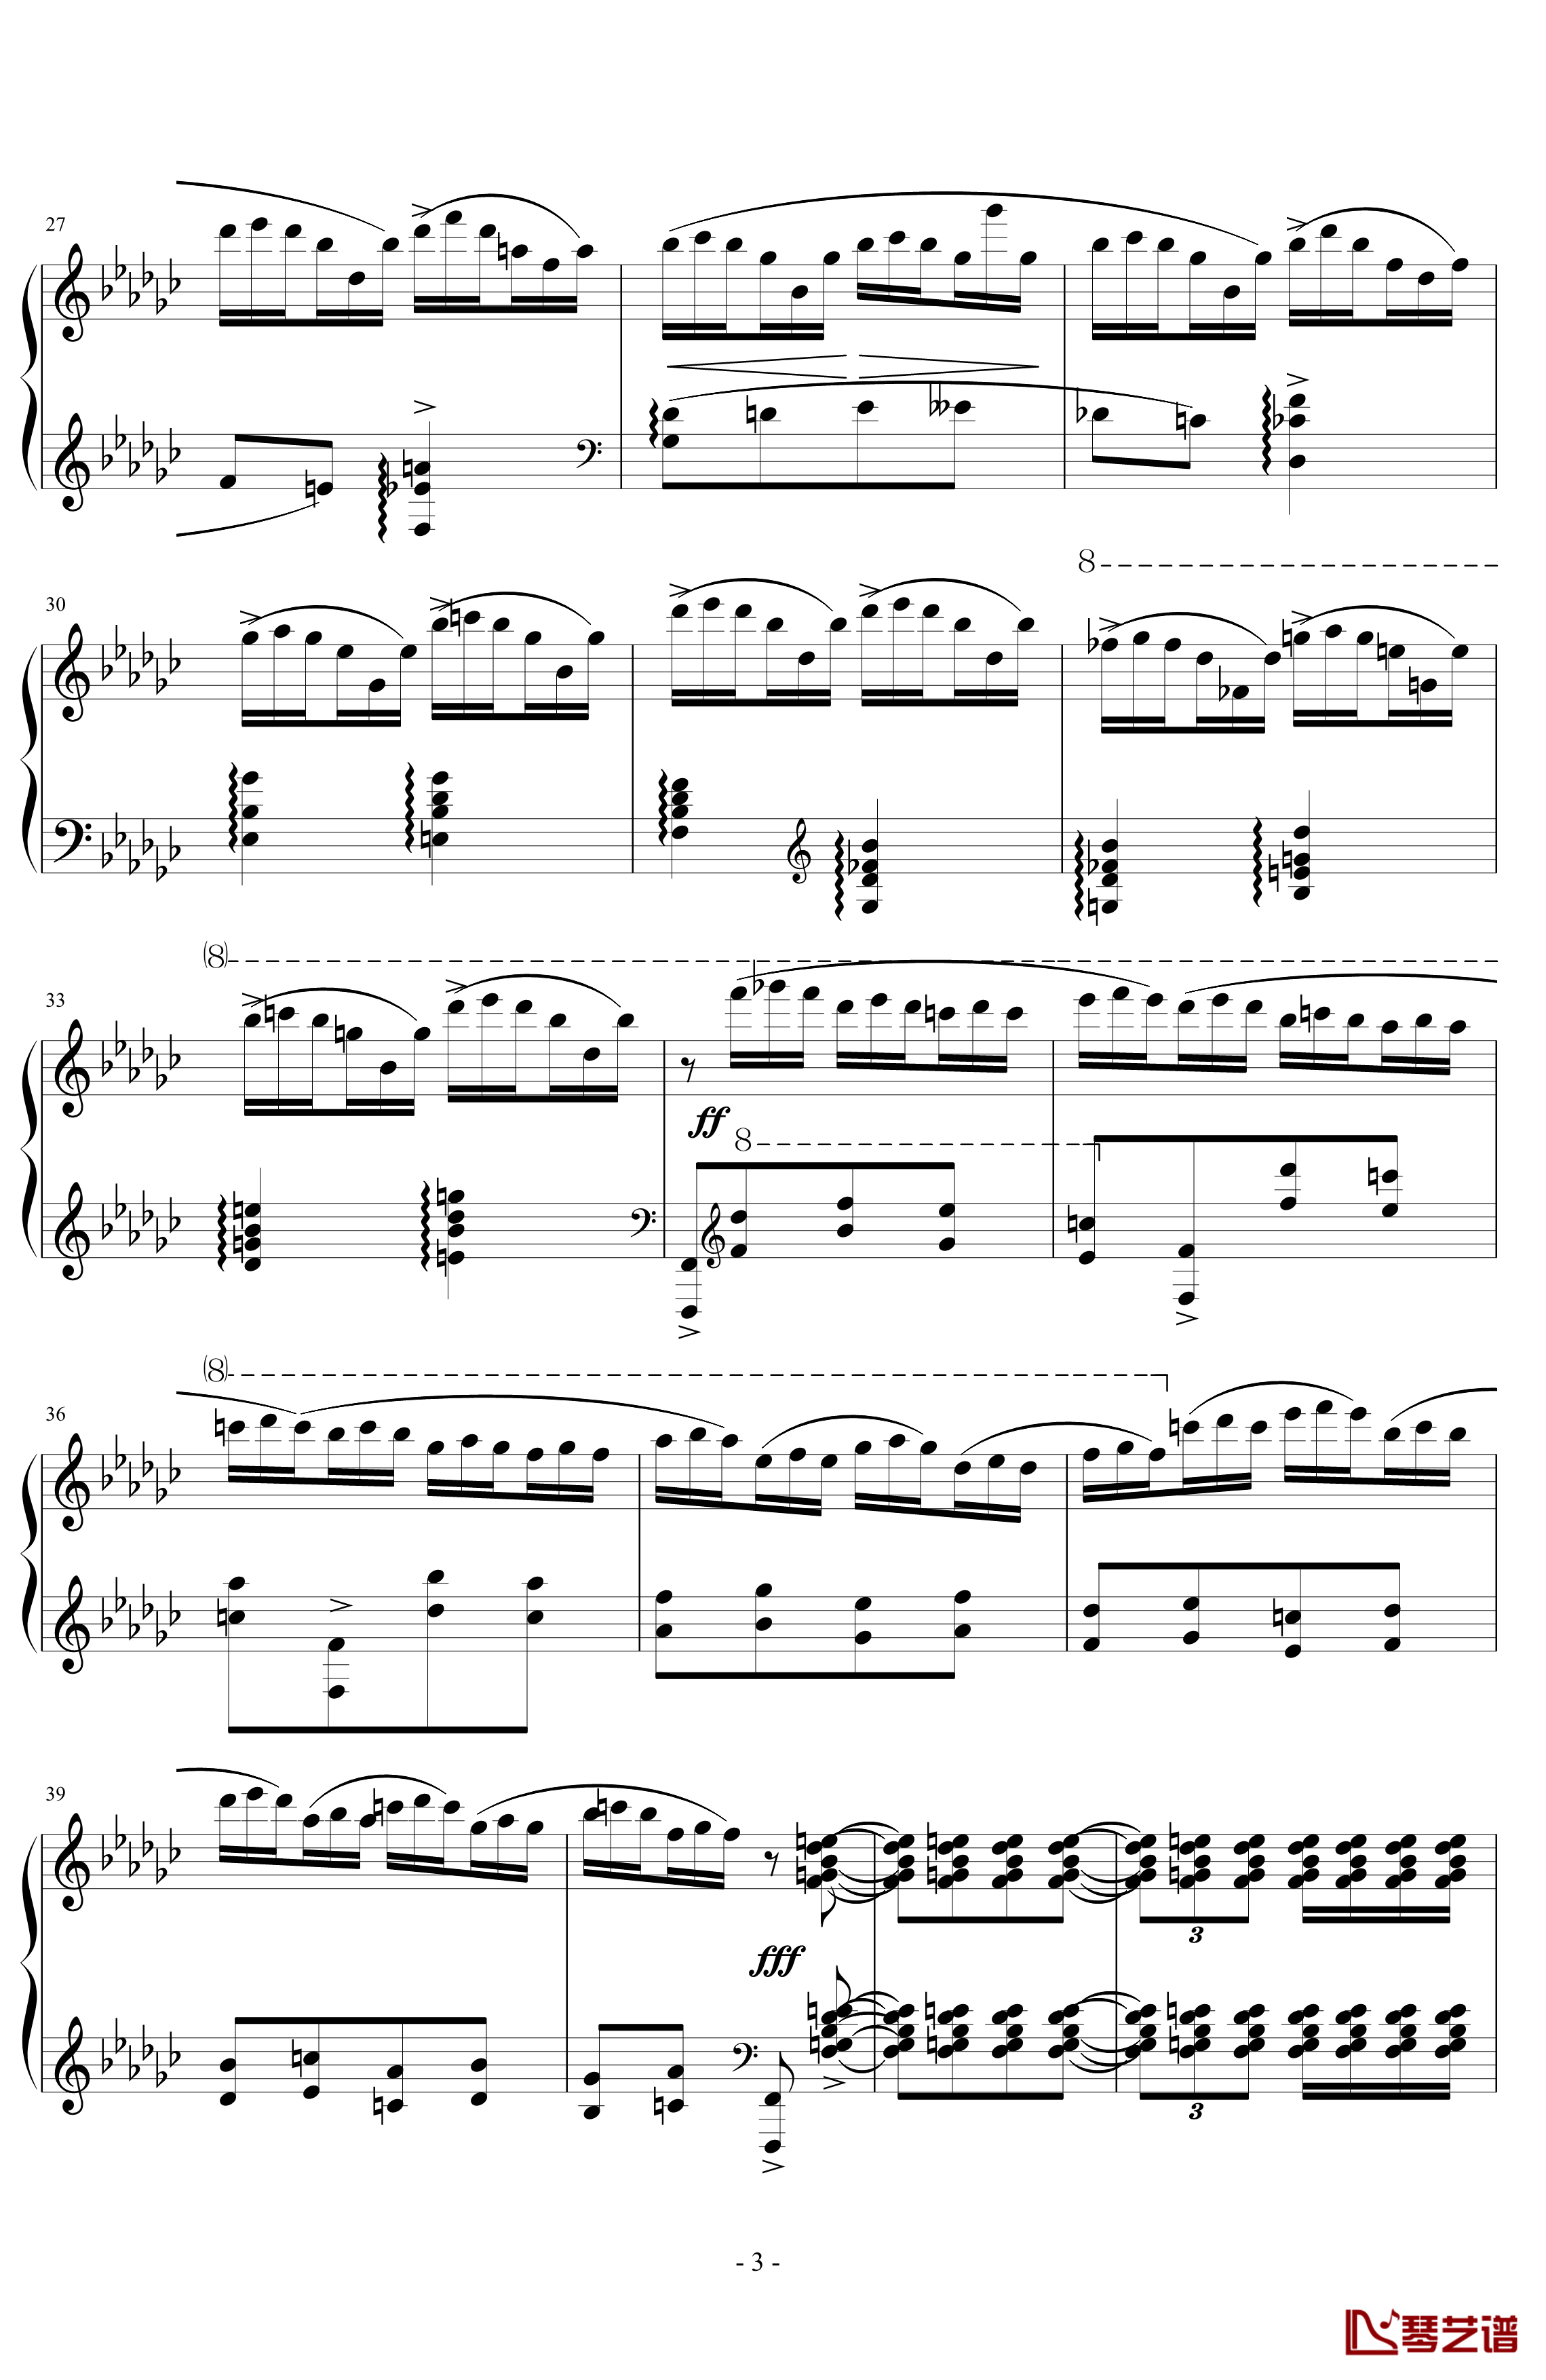 《练习曲Op.25 No.3》钢琴谱-阿连斯基-希望能为大家带来惊喜3